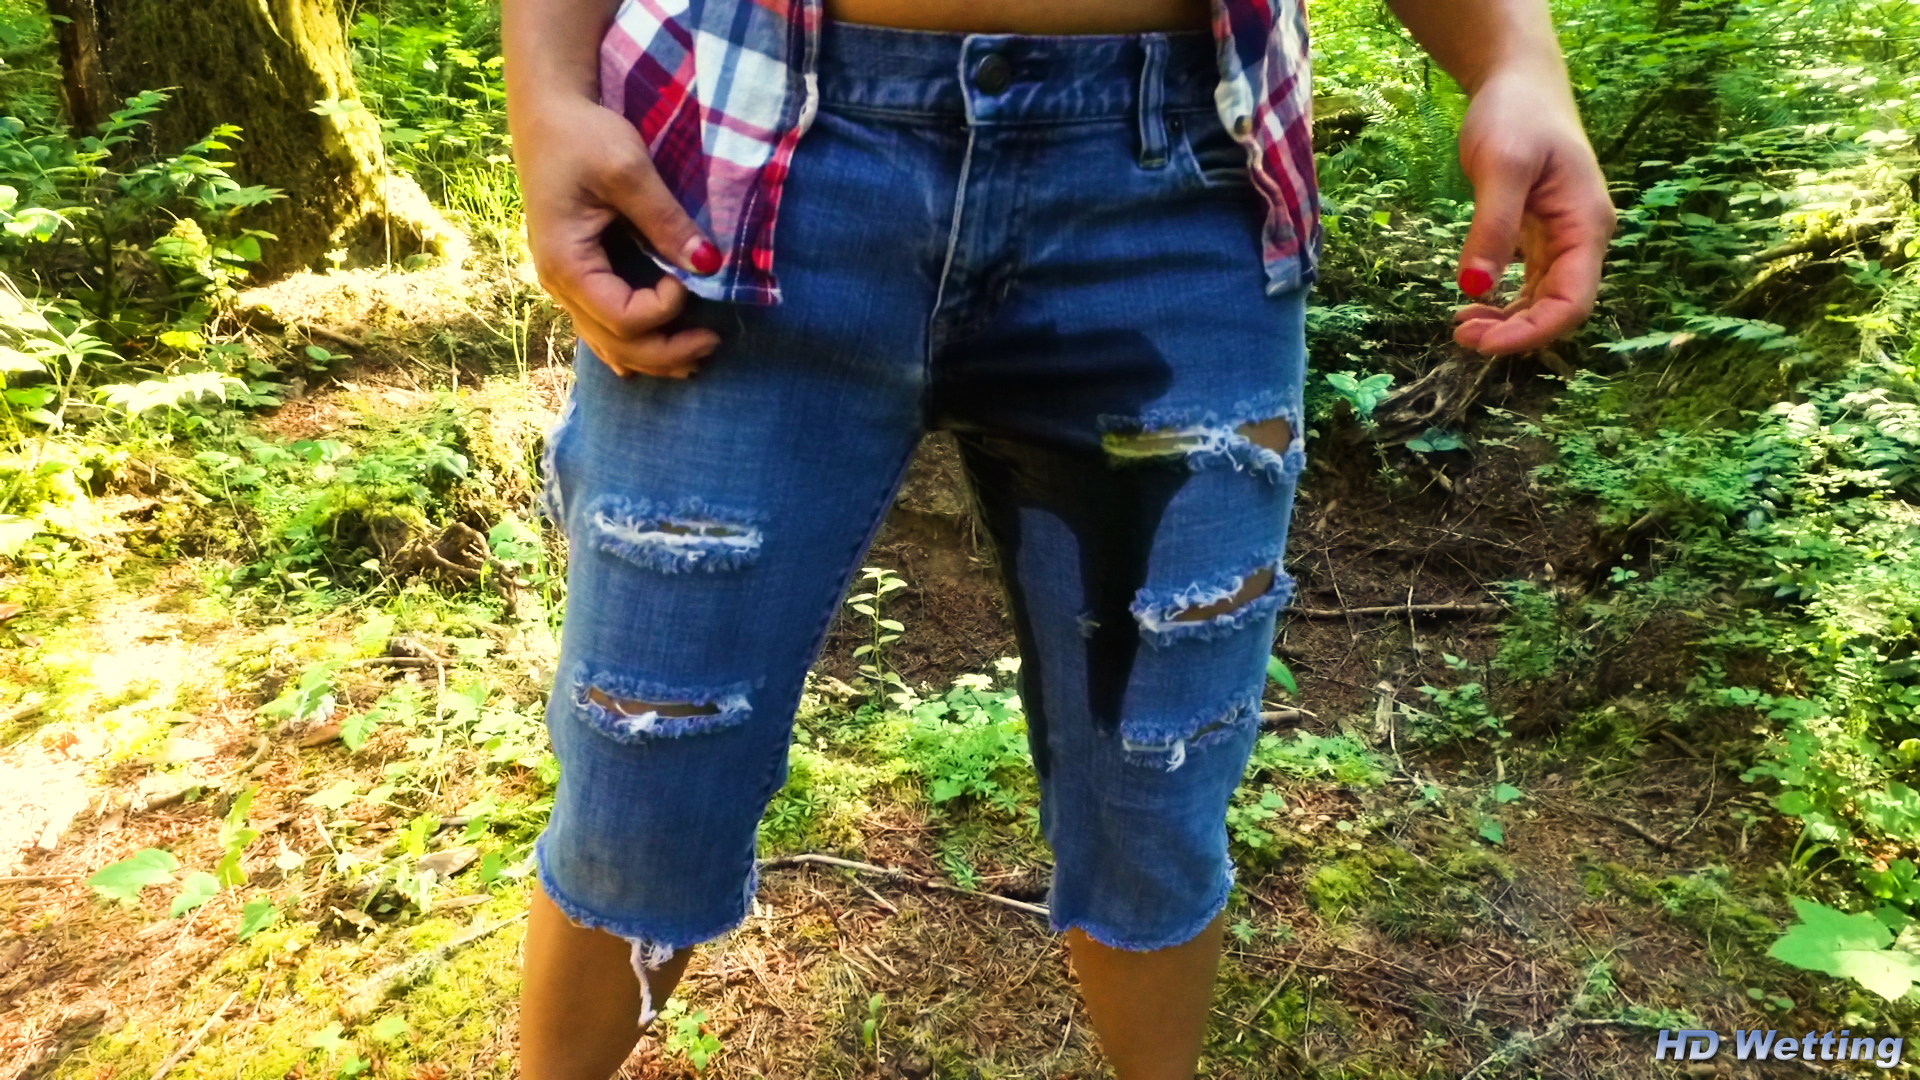 Nikko Pissing In Her Jeans. 